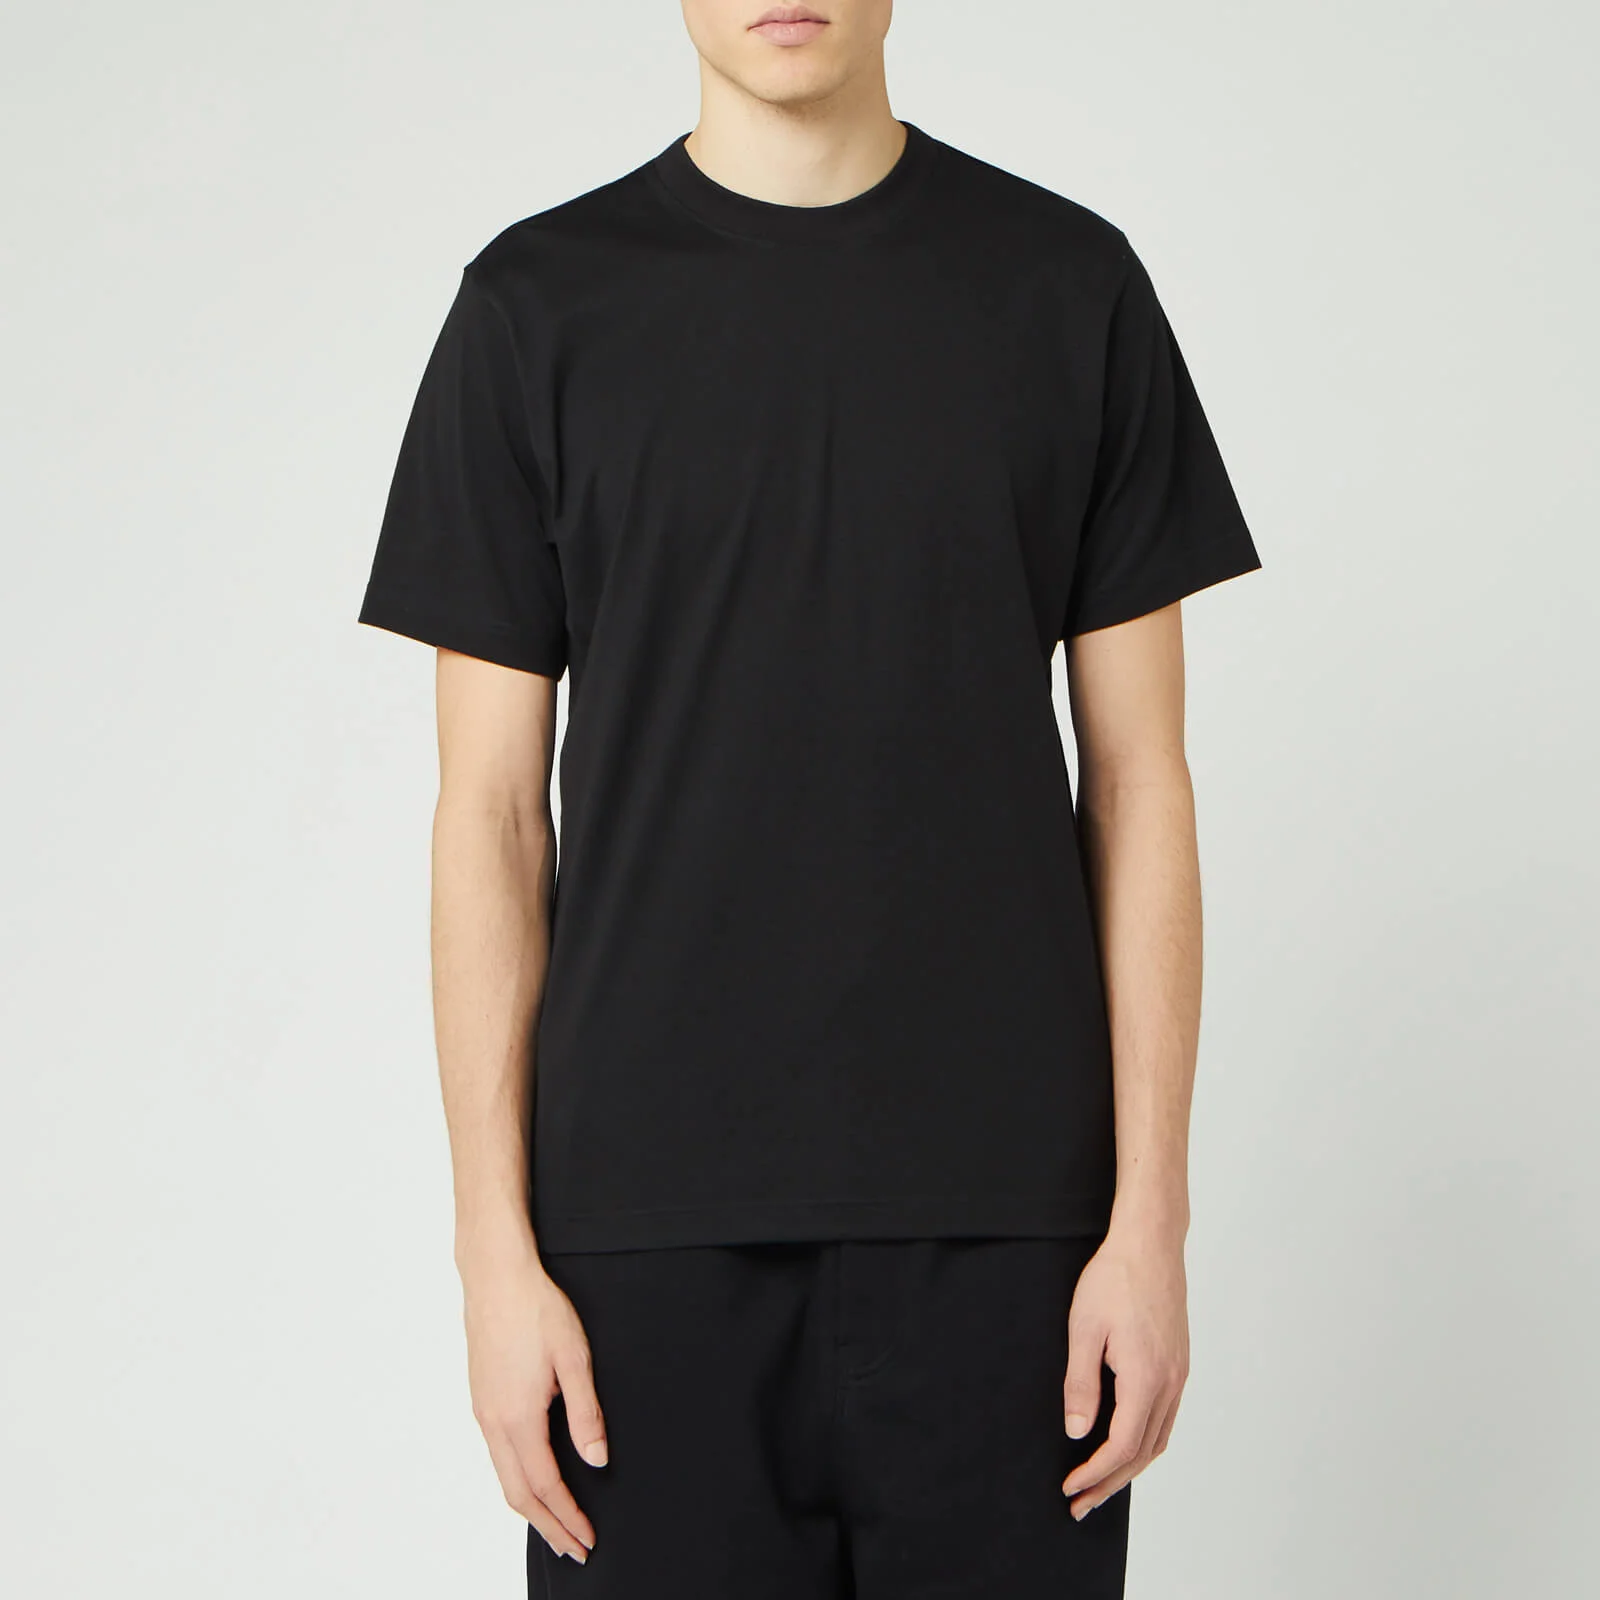 Y-3 Men's Crft Short Sleeve T-Shirt - Black Image 1